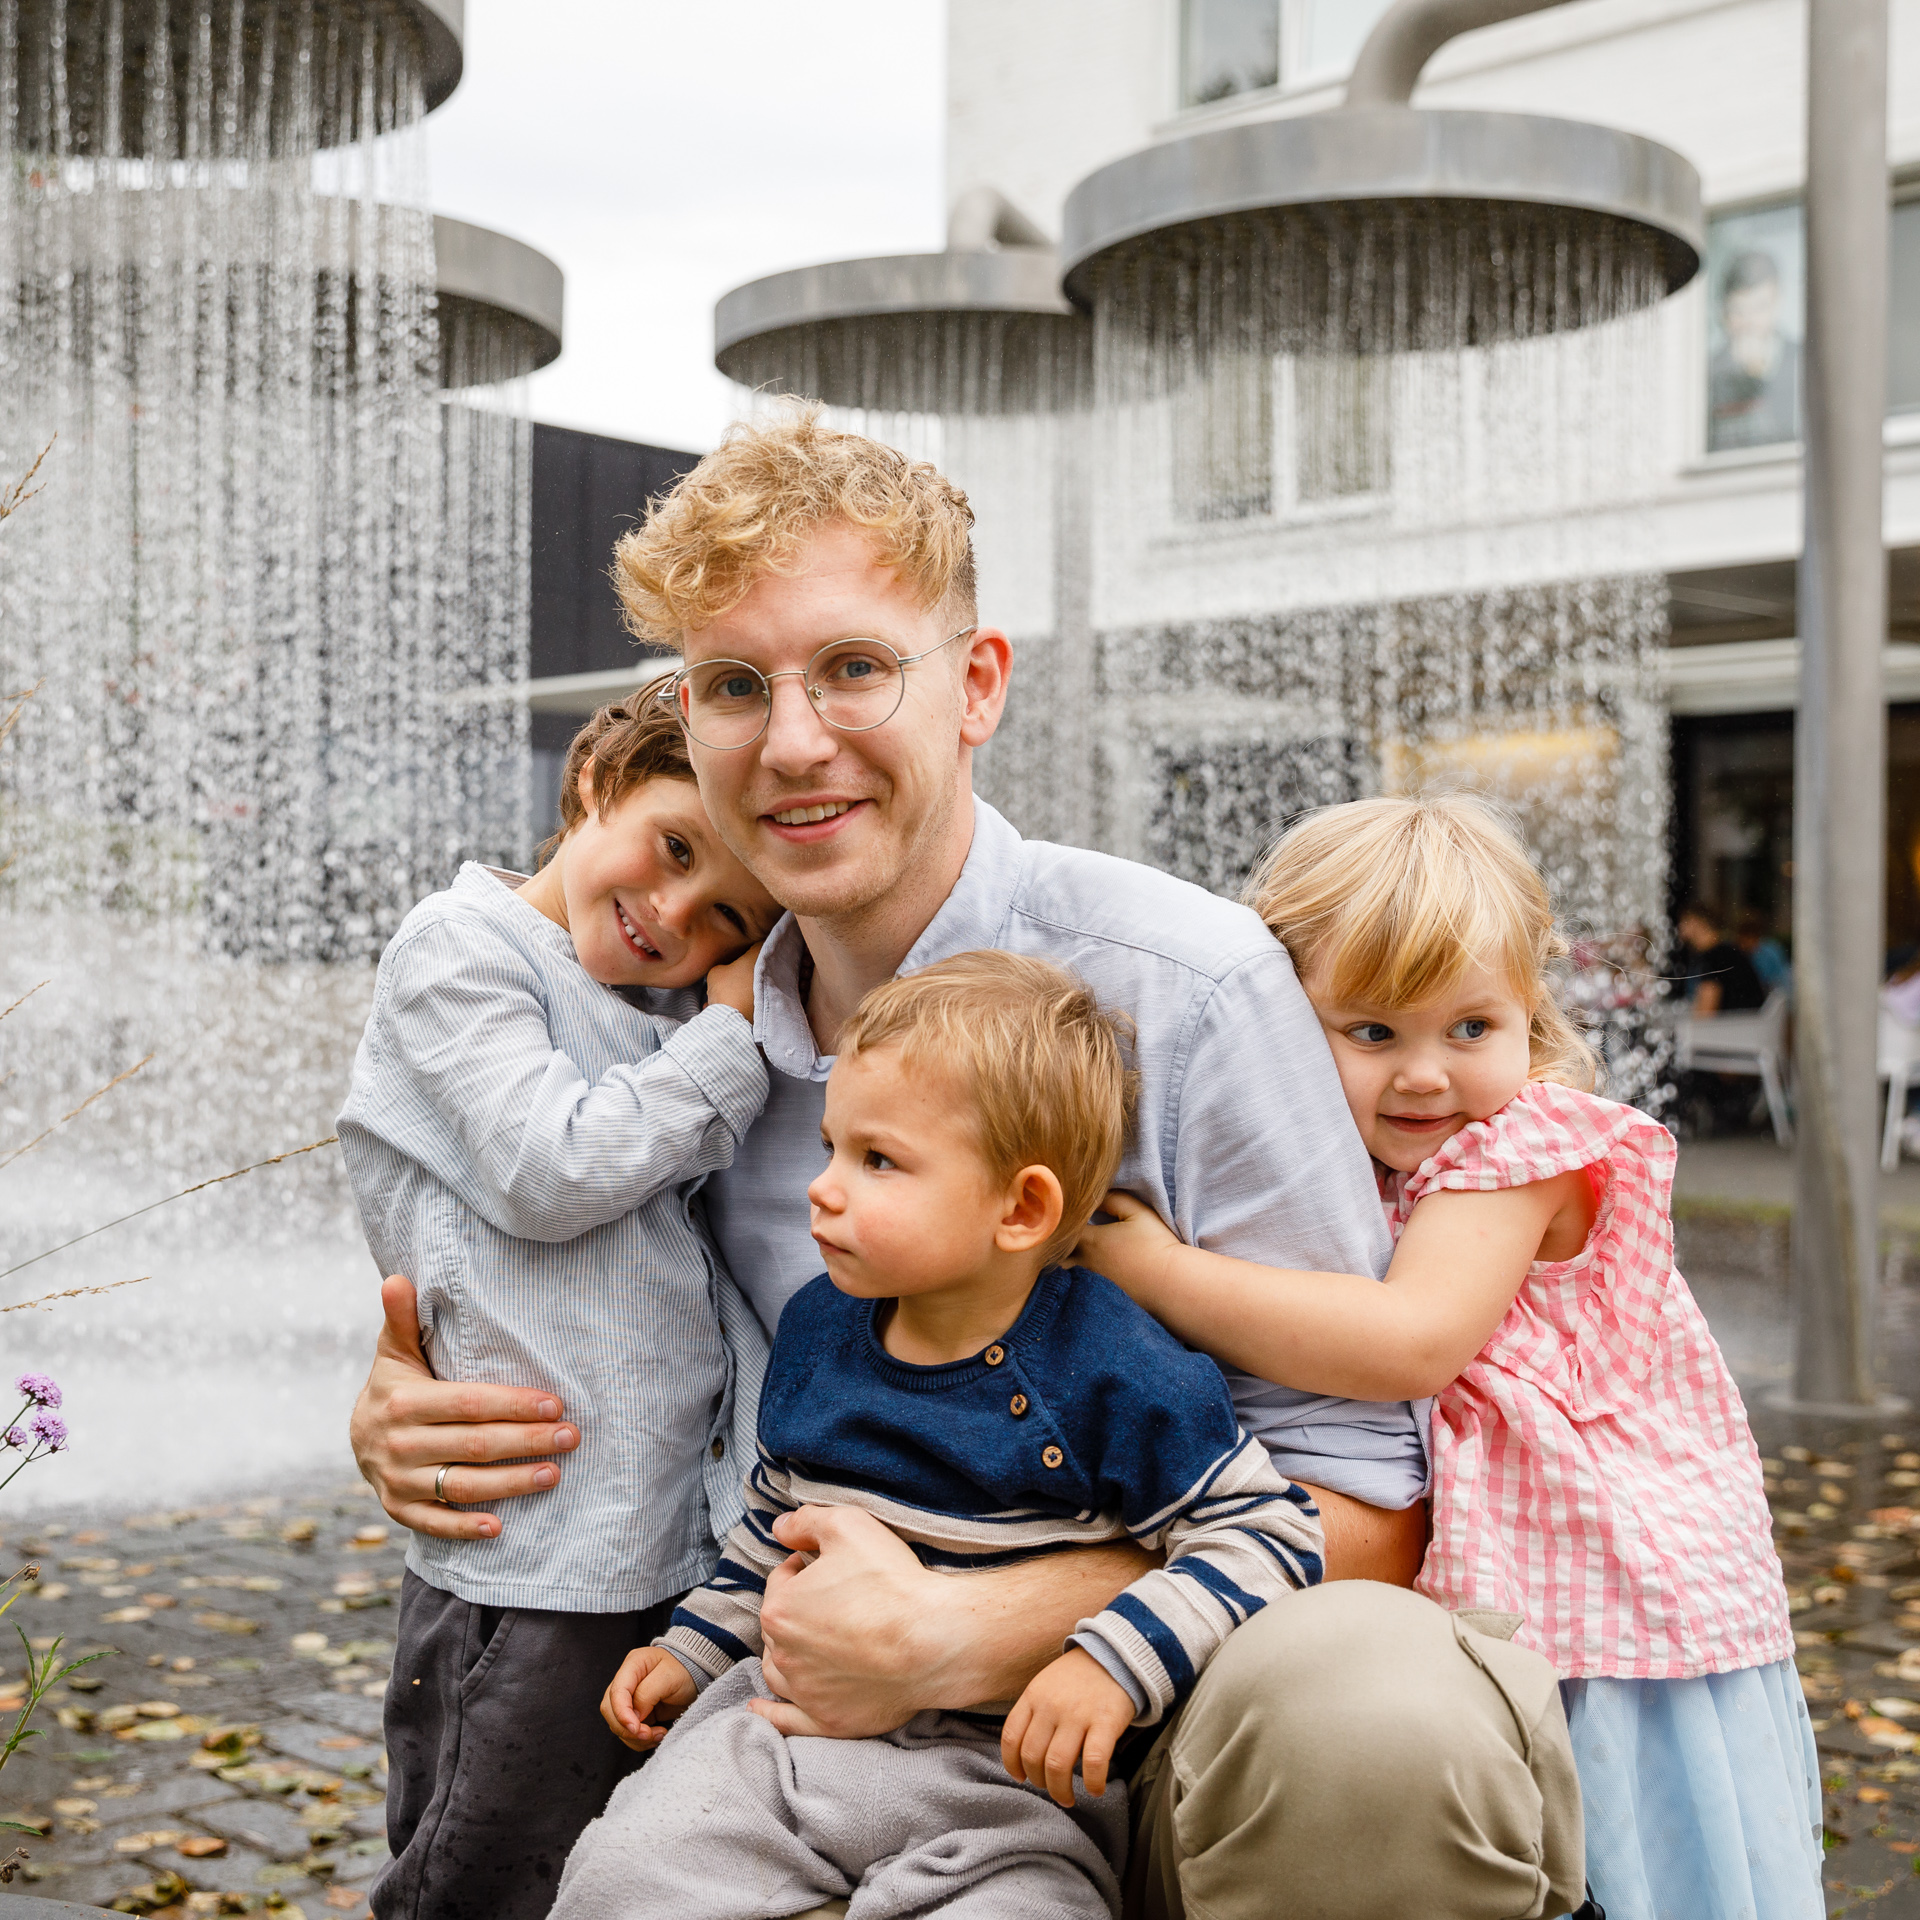 Tėtis su trim mažyliais glėbyje pozuoja prie fontano. 